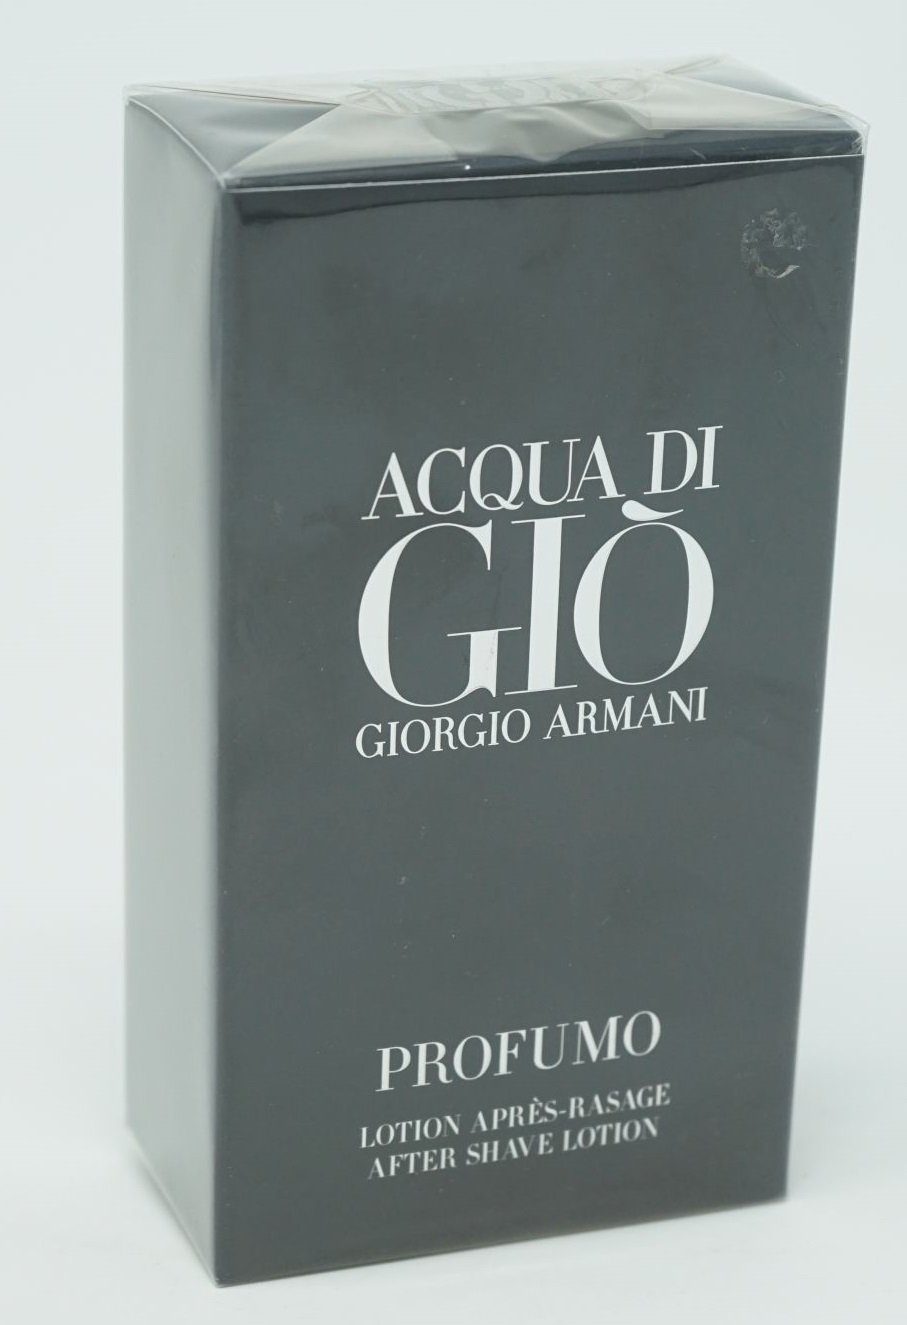 Giorgio Armani Eau de Toilette di After Lotion Profumo Gio 100 Armani Shave Giorgio ml Acqua